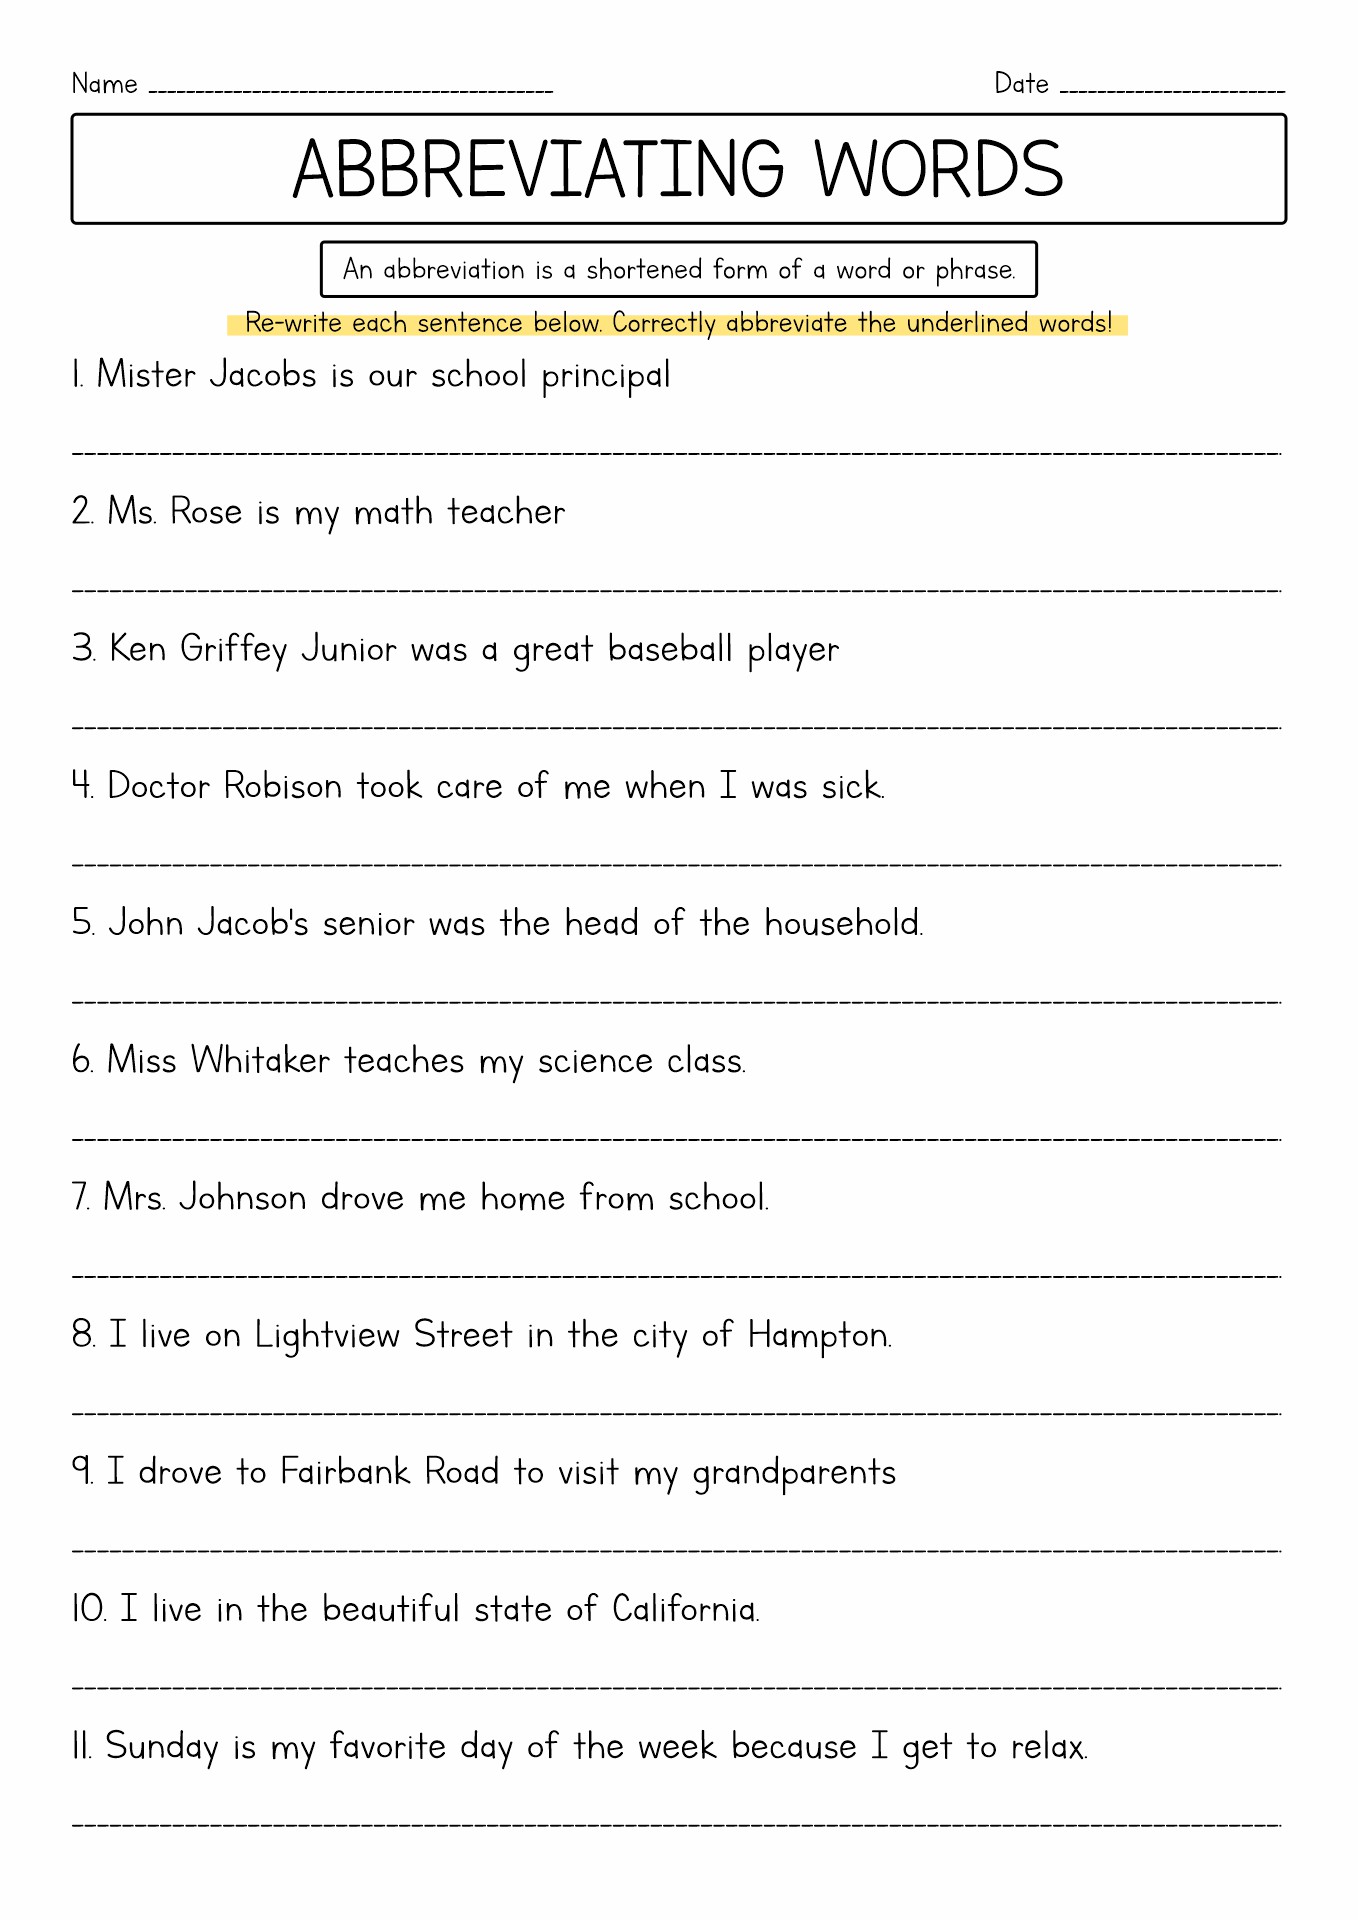 9th Grade English Worksheets Image